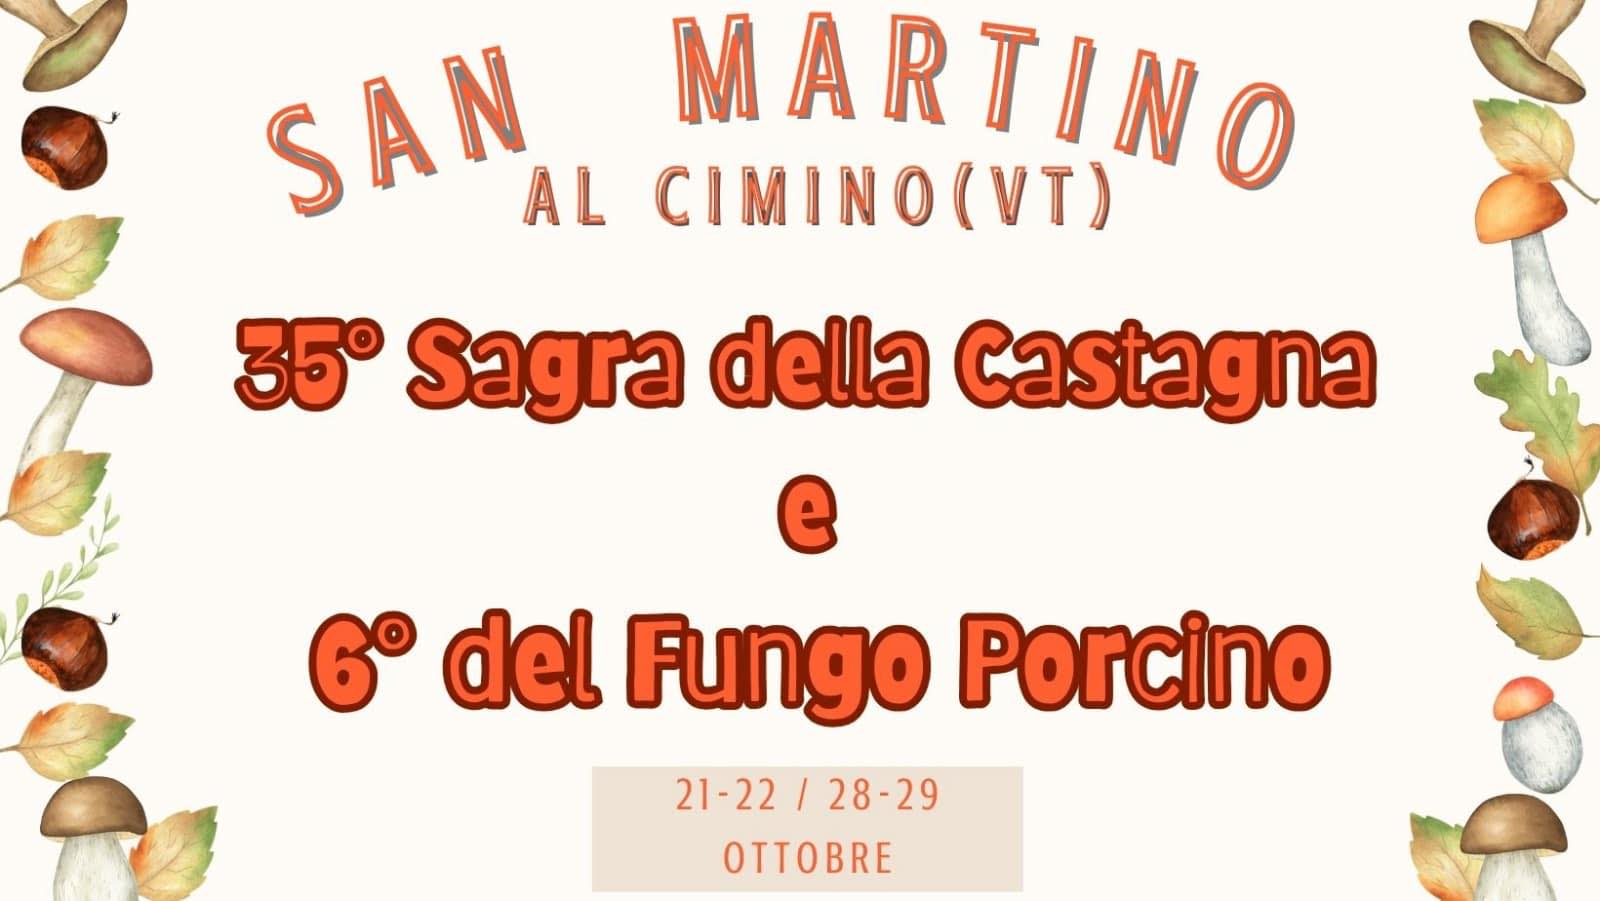 San Martino Al Cimino (VT)
"34^ Sagra della Castagna"
22-23 e 29-30 Ottobre 2022 
